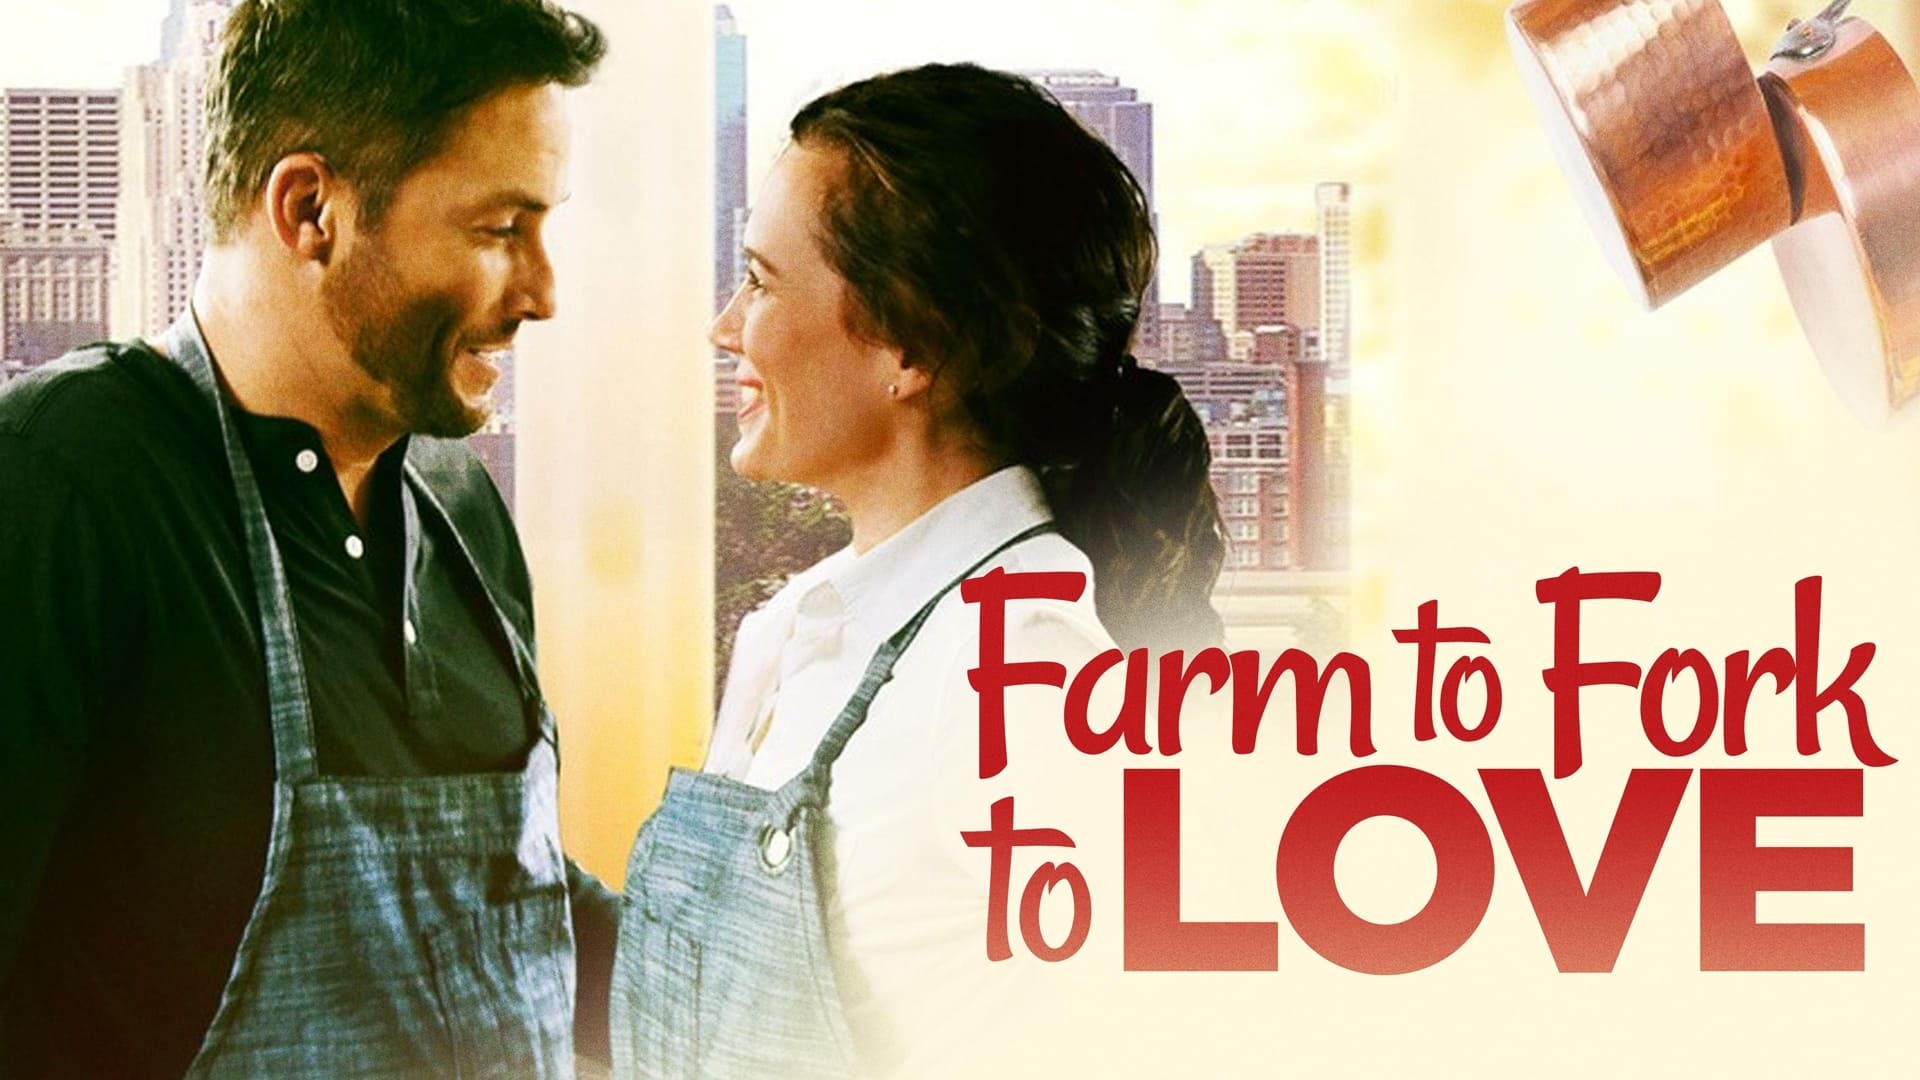 ფერმიდან ჩანგლამდე , ჩანგლიდან სიყვარულამდე / Farm to Fork to Love